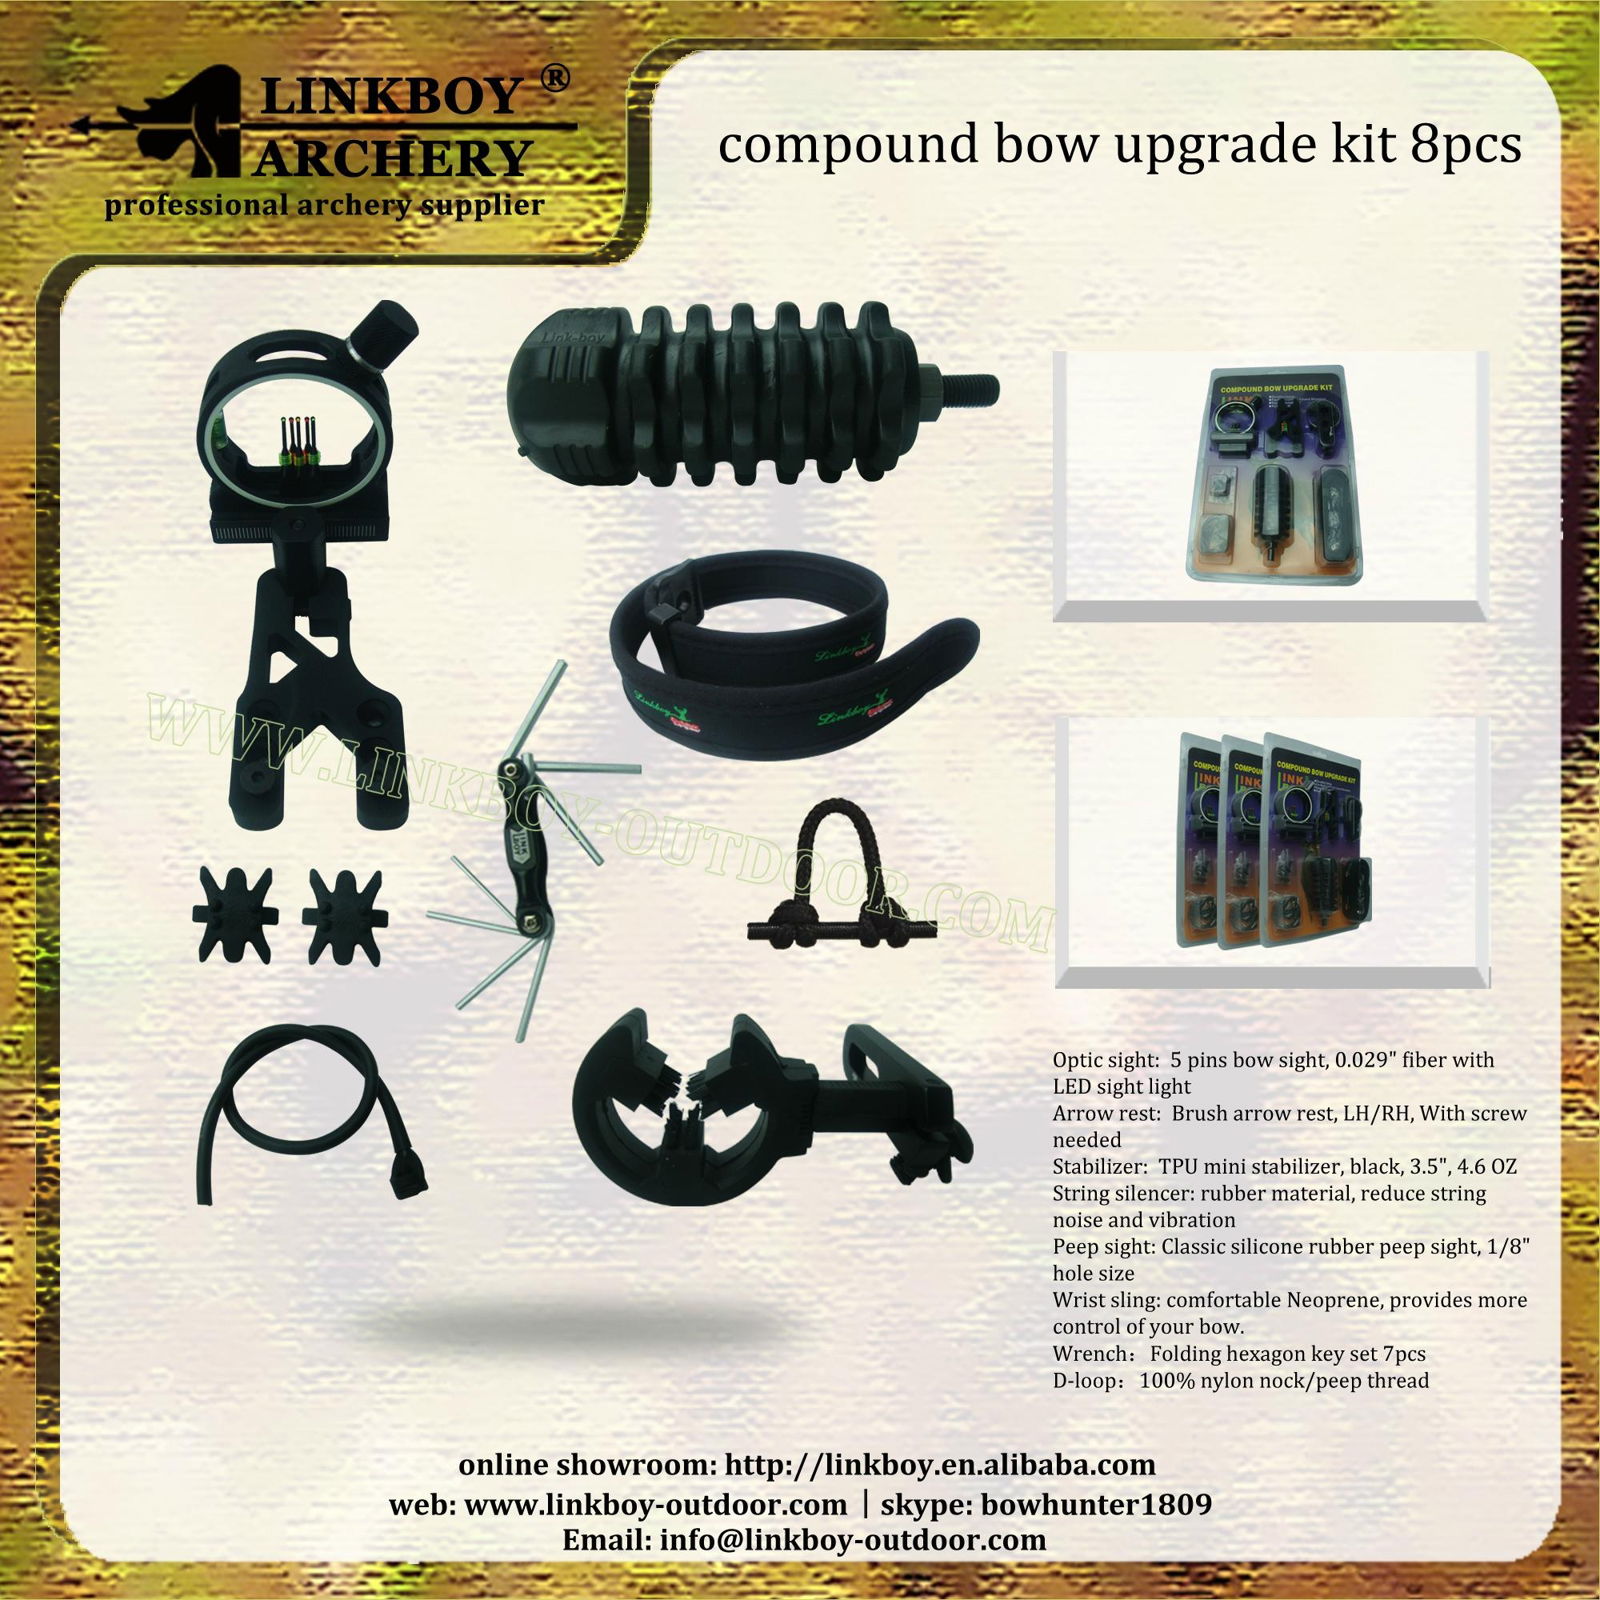 Linkboy archery compound bow upgrade kit 8pcs for archery hunting 